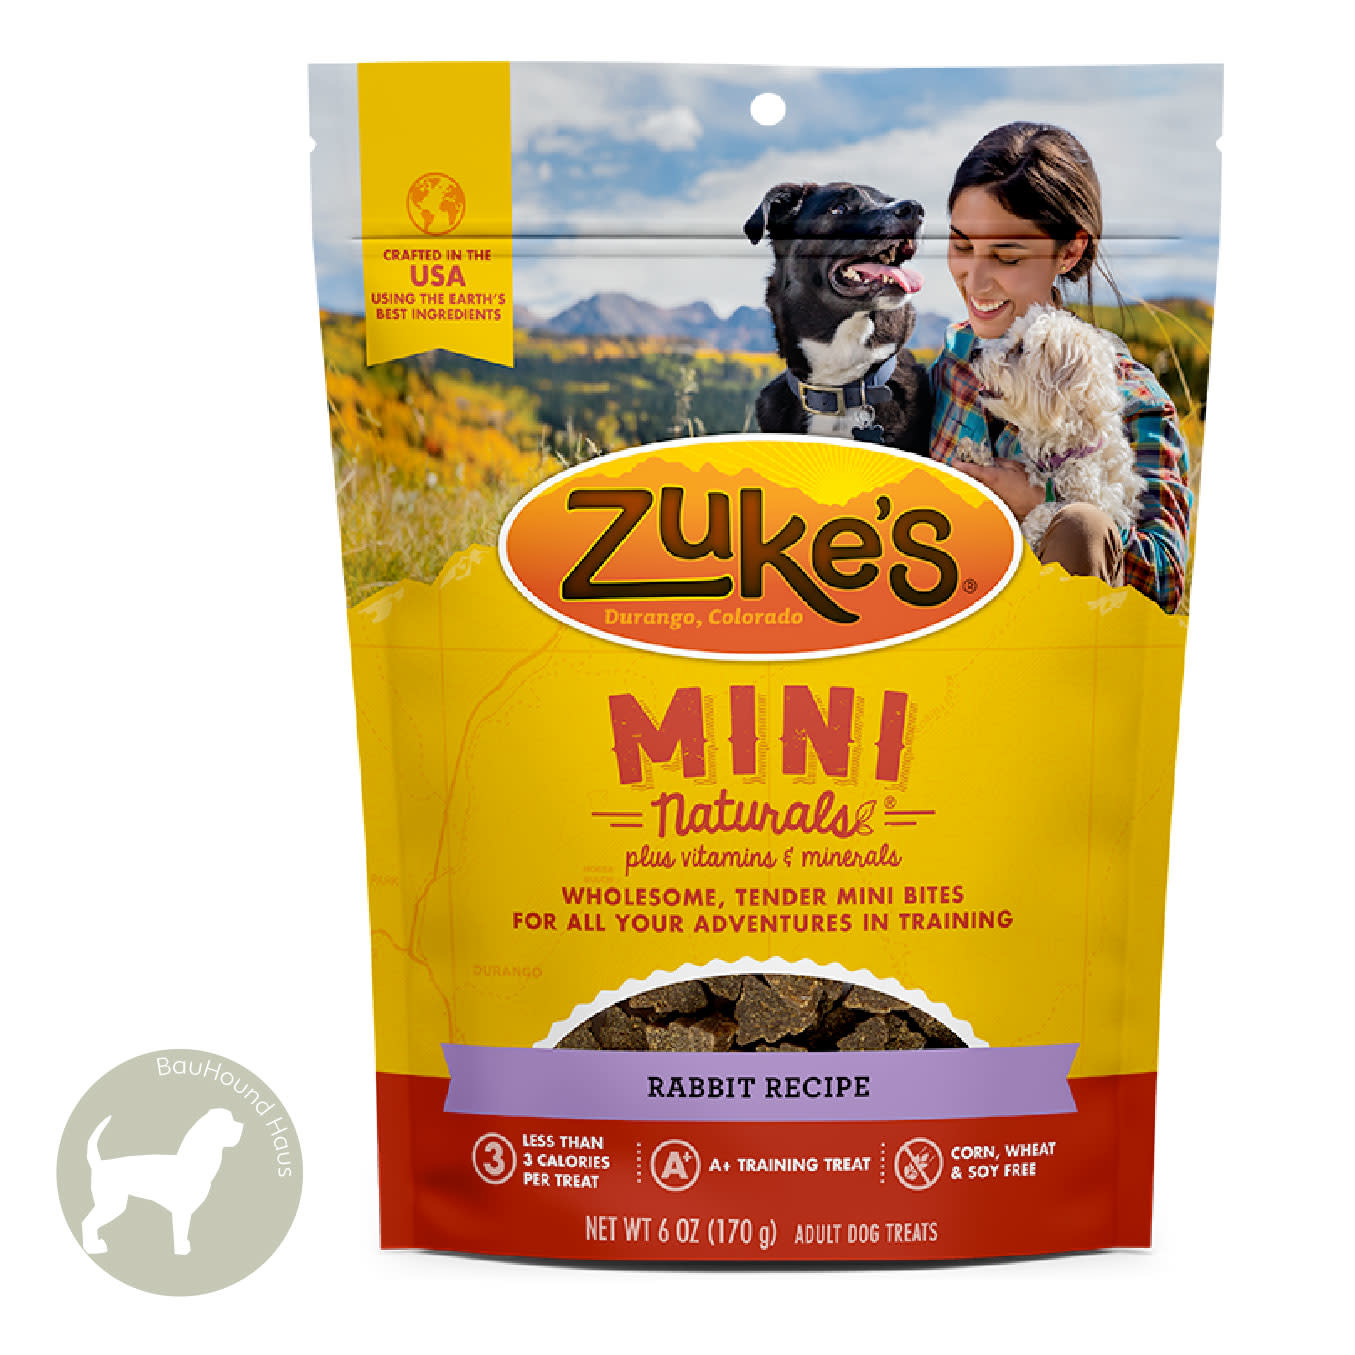 Zukes Zukes Mini Naturals Rabbit Treats, 1lb